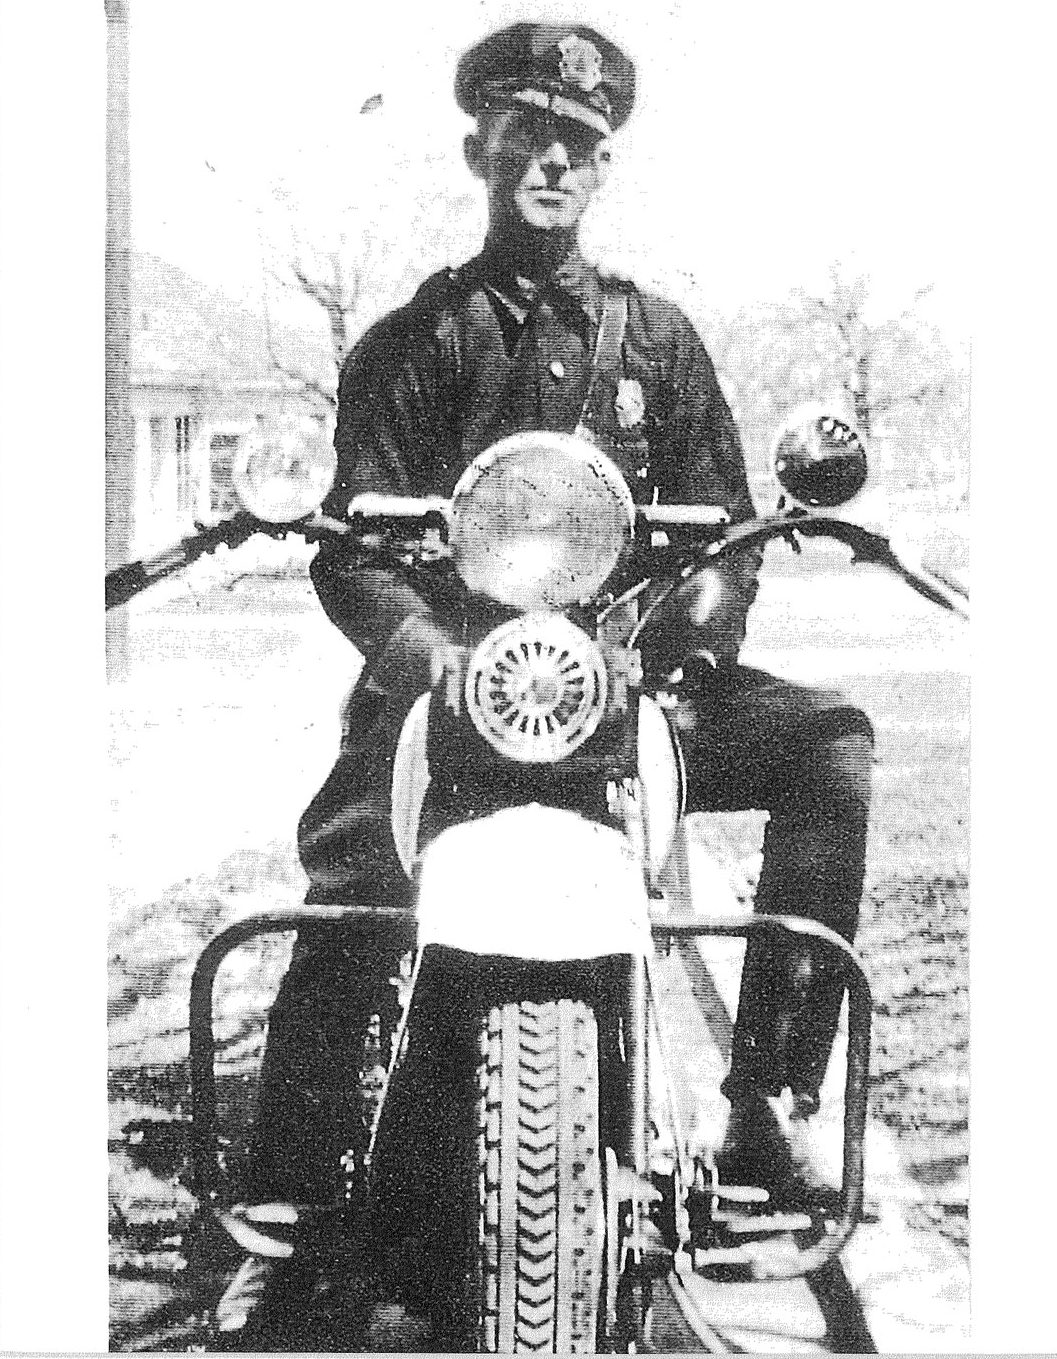 Bryan Police Officer Howard Lee in 1933